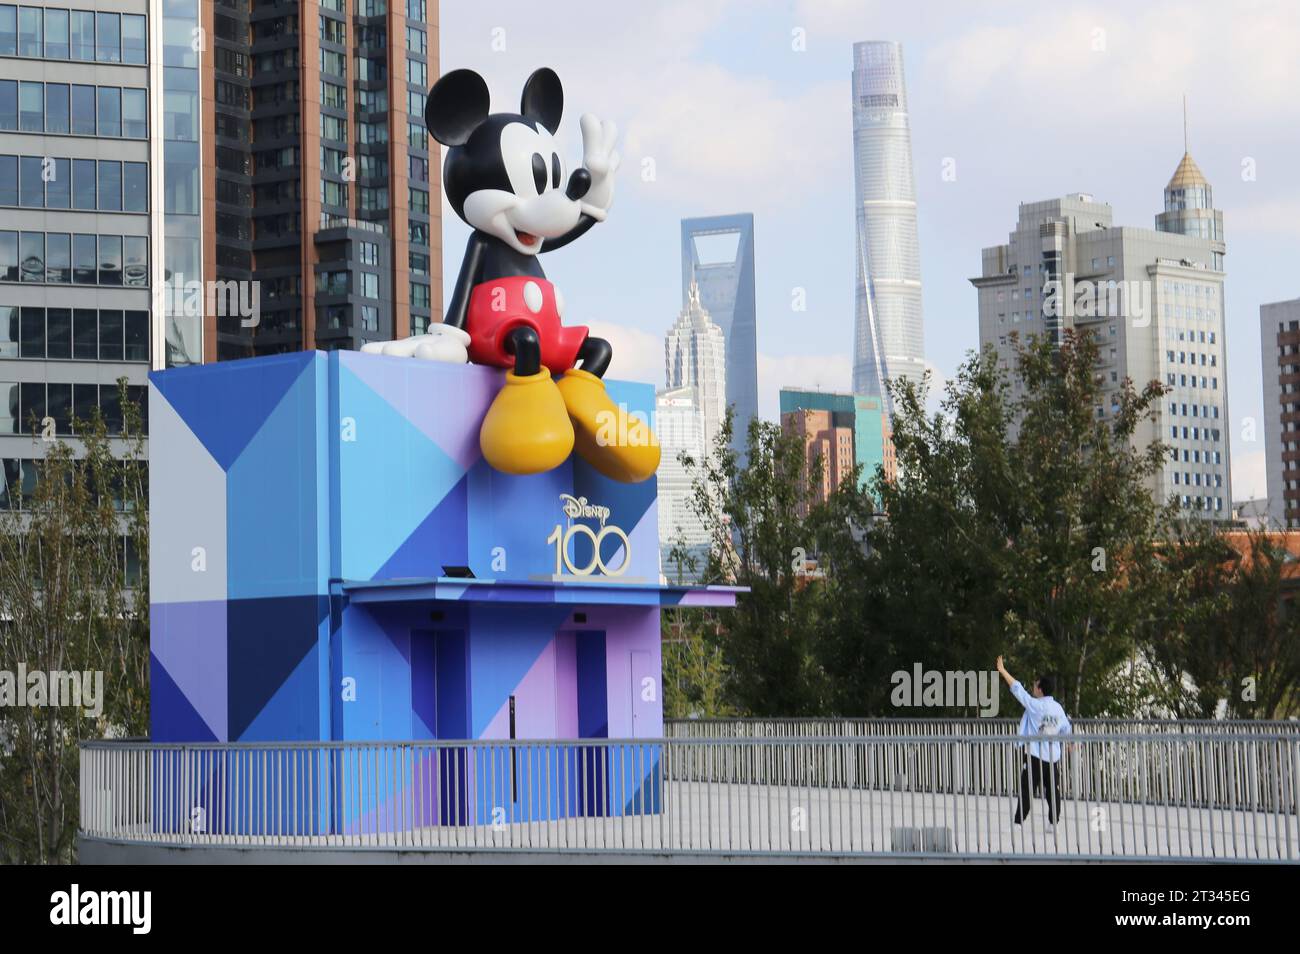 SHANGHAI, CHINE - le 22 OCTOBRE 2023 - Une sculpture commémorative du 100e anniversaire de Disney, Mickey Mouse, se trouve au complexe commercial près du Suzhou Banque D'Images